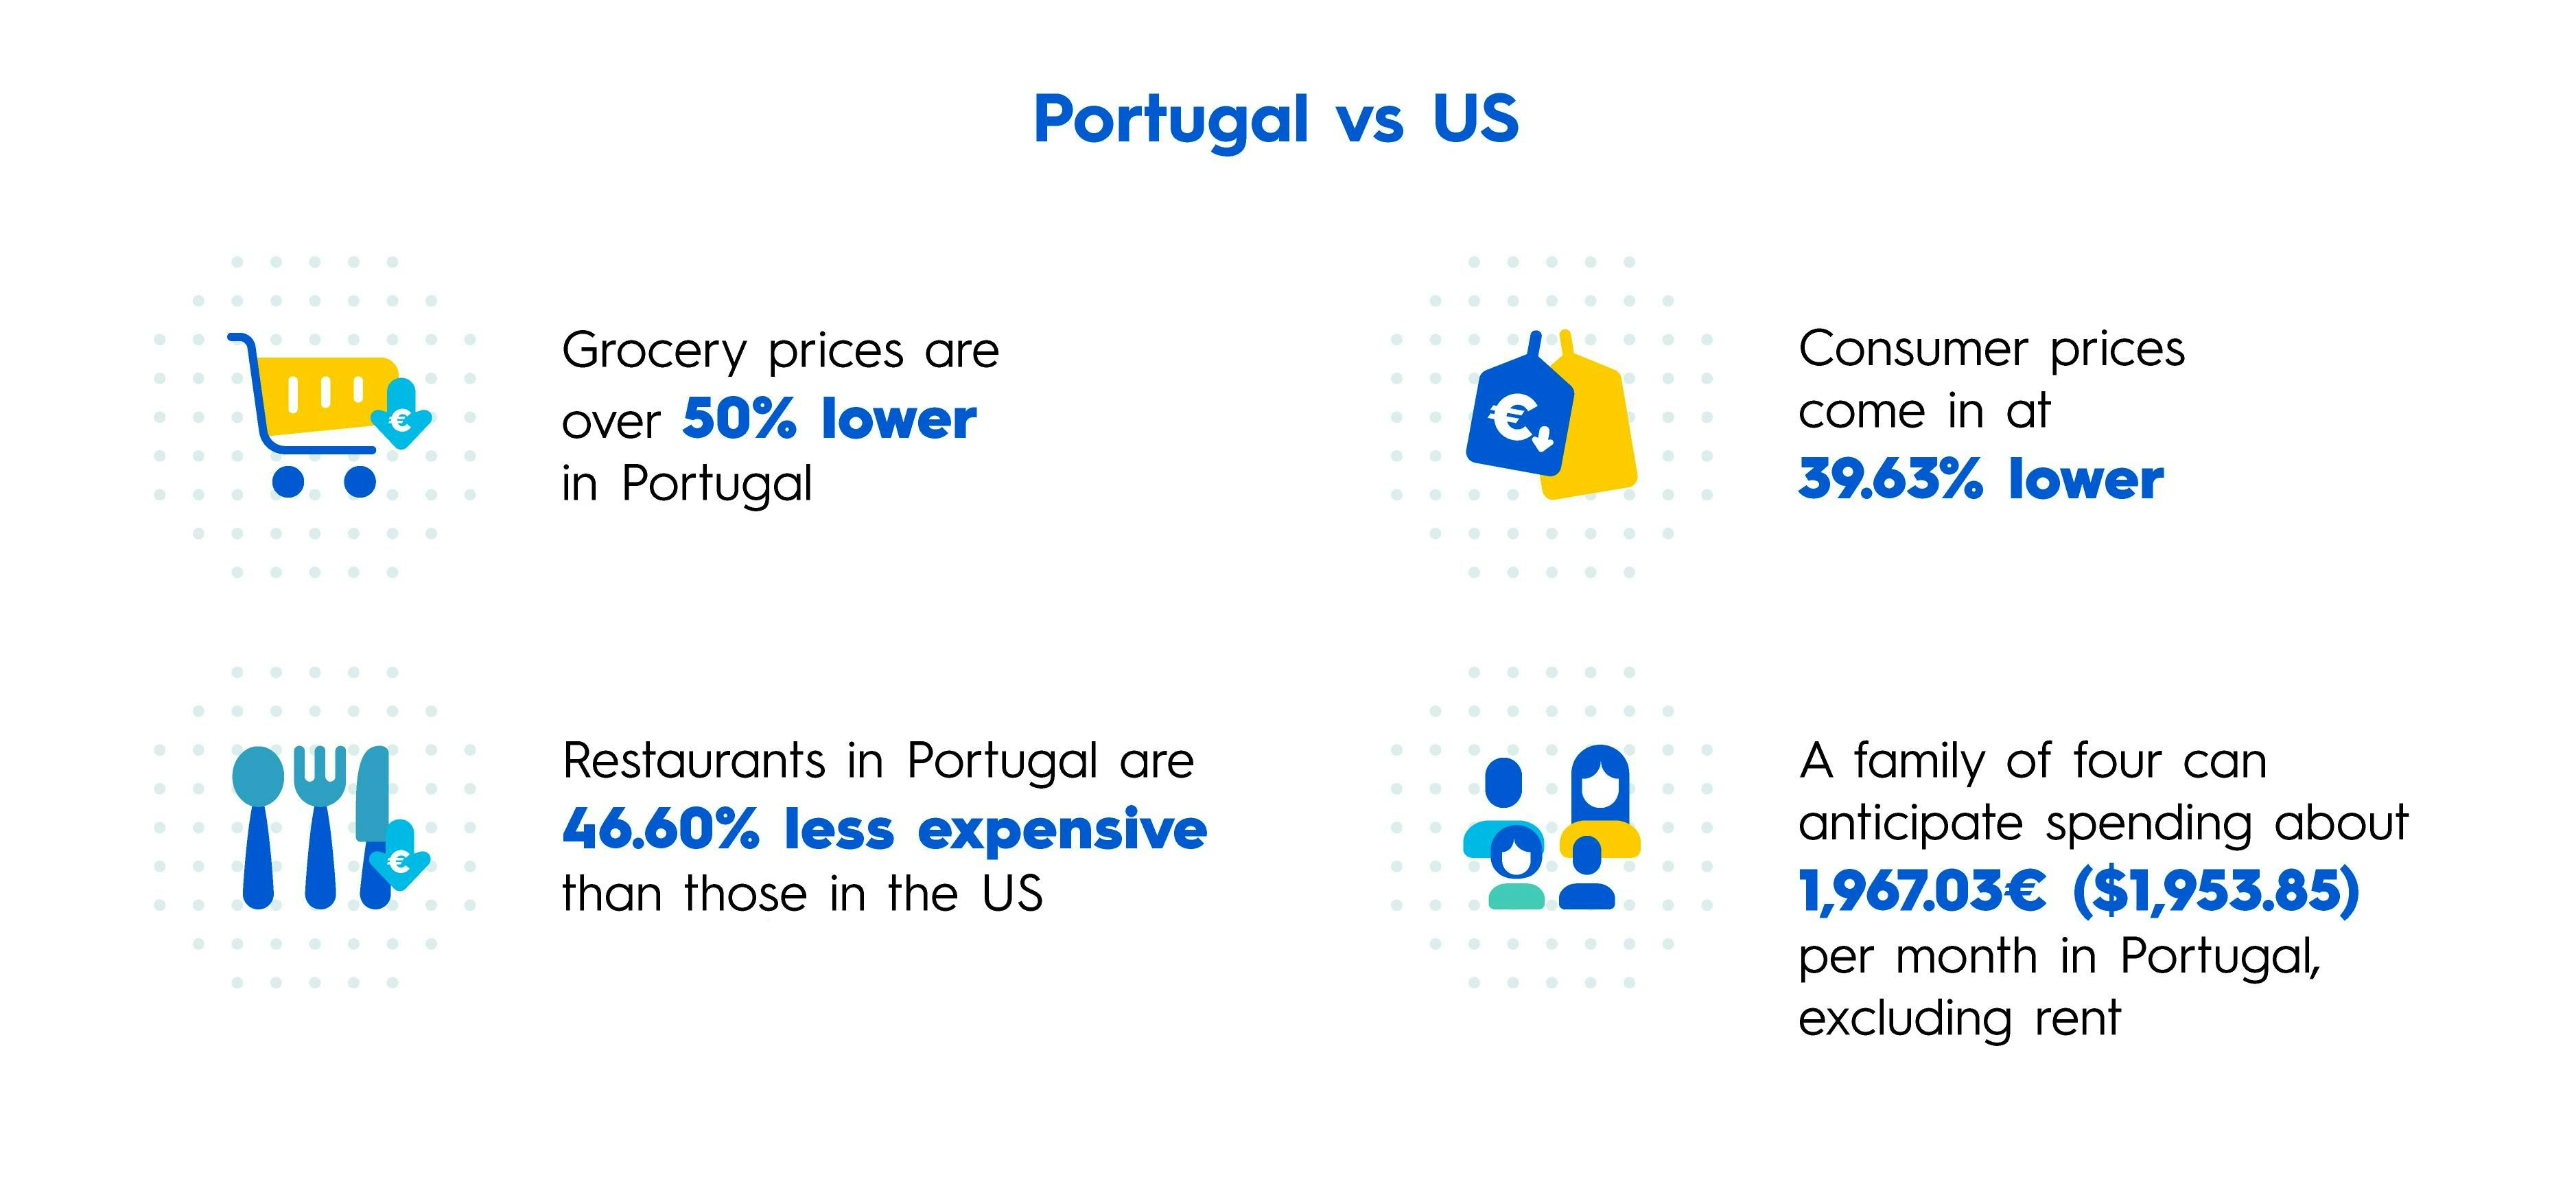 Infográfico da moviinn comparando o custo de vida entre Portugal e os EUA, mostrando diferenças nos preços de alimentos, restaurantes, bens de consumo e despesas mensais para uma família de quatro pessoas.